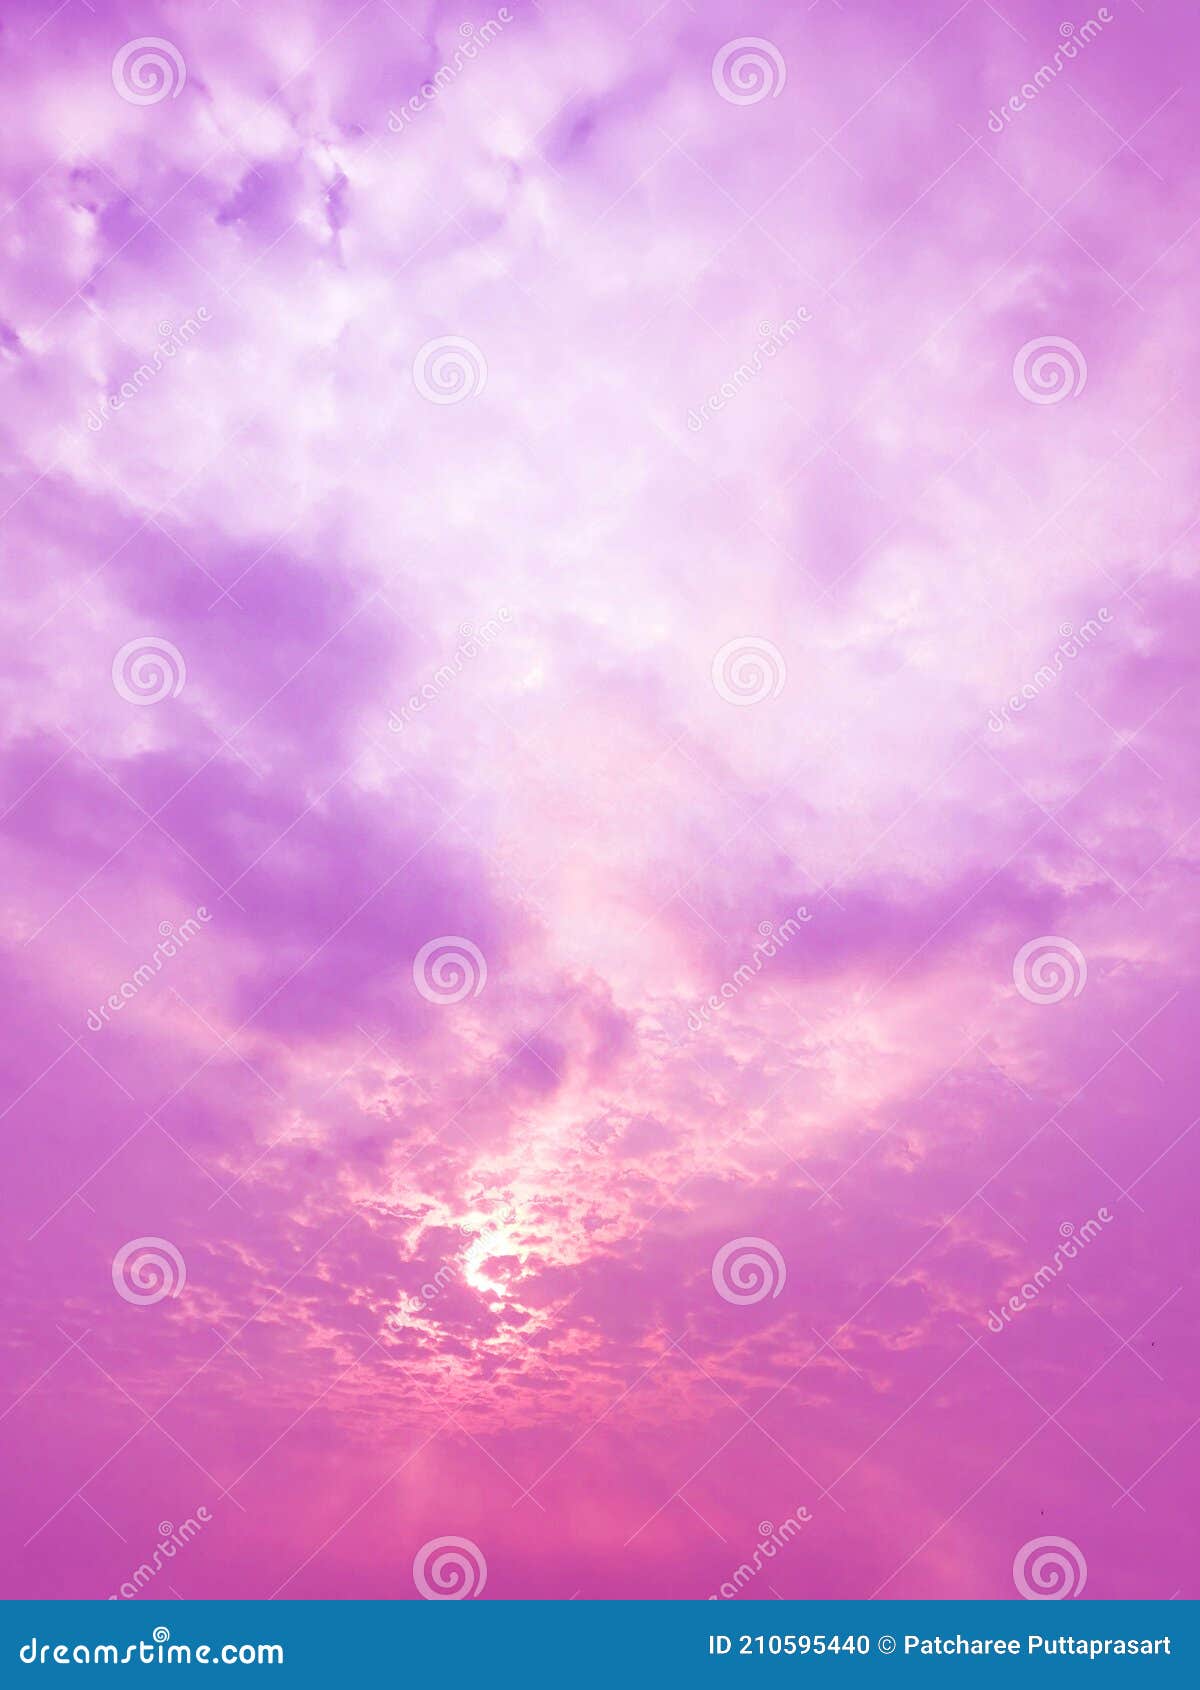 Những tia sáng màu hồng trải dài trên nền Pink Sky Texture tạo nên một cảm giác nhẹ nhàng và mơ màng. Hãy bấm vào hình để khám phá thêm nhiều hình nền phù hợp cho điện thoại của bạn, tạo nên cảm giác mới mẻ mỗi ngày!